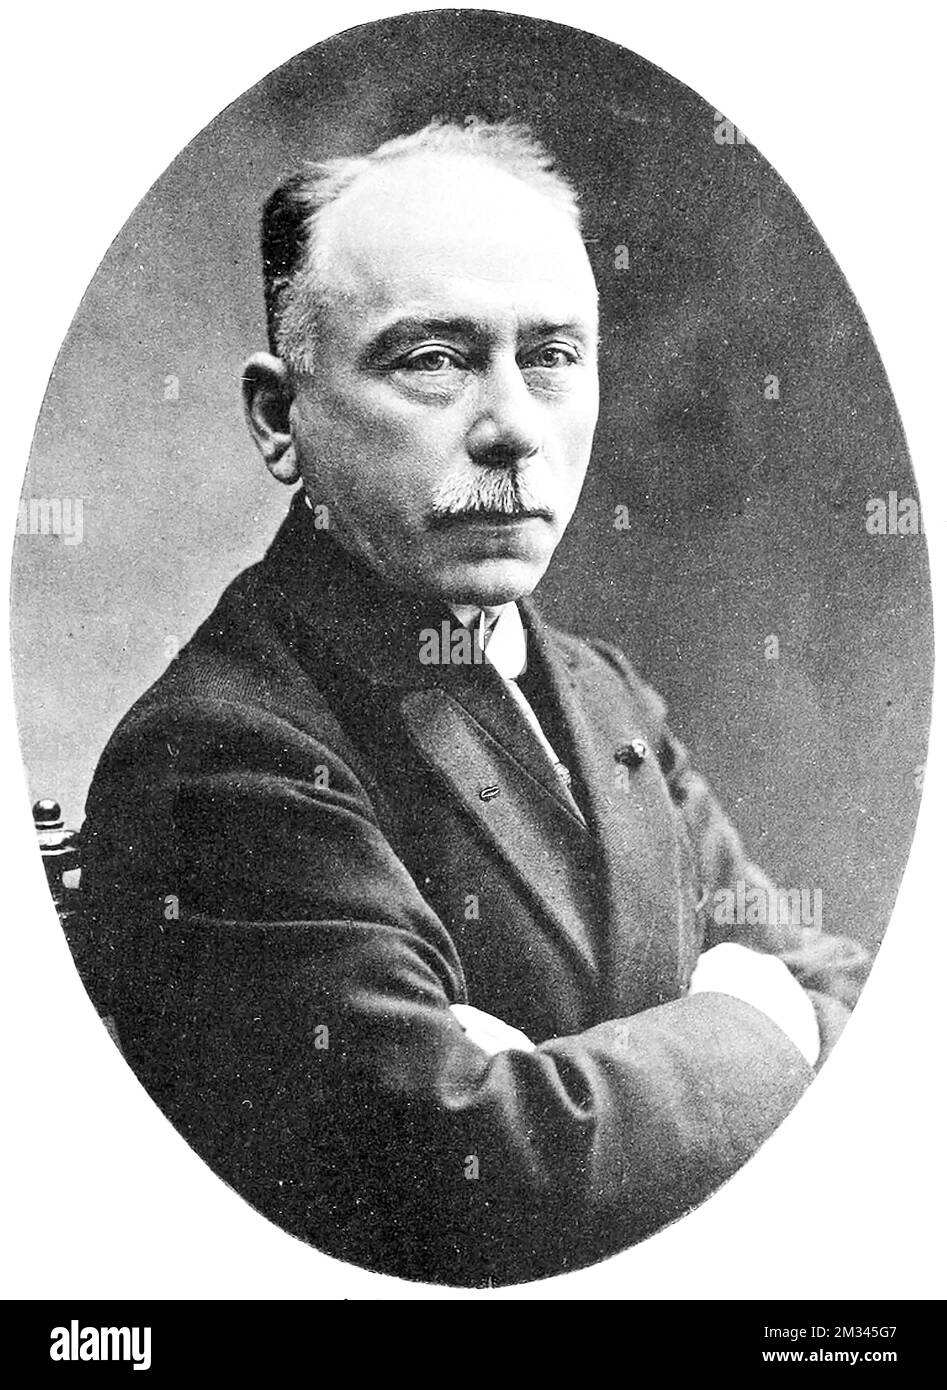 Porträt von Jules Bordet. Jules Jean Baptiste Vincent Bordet (1870-1961) war belgischer Immunologe und Mikrobiologe. Die bakterielle Gattung Bordetella ist nach ihm benannt. Der Nobelpreis für Physiologie oder Medizin wurde ihm 1919 für seine Entdeckungen in Bezug auf Immunität verliehen. Stockfoto